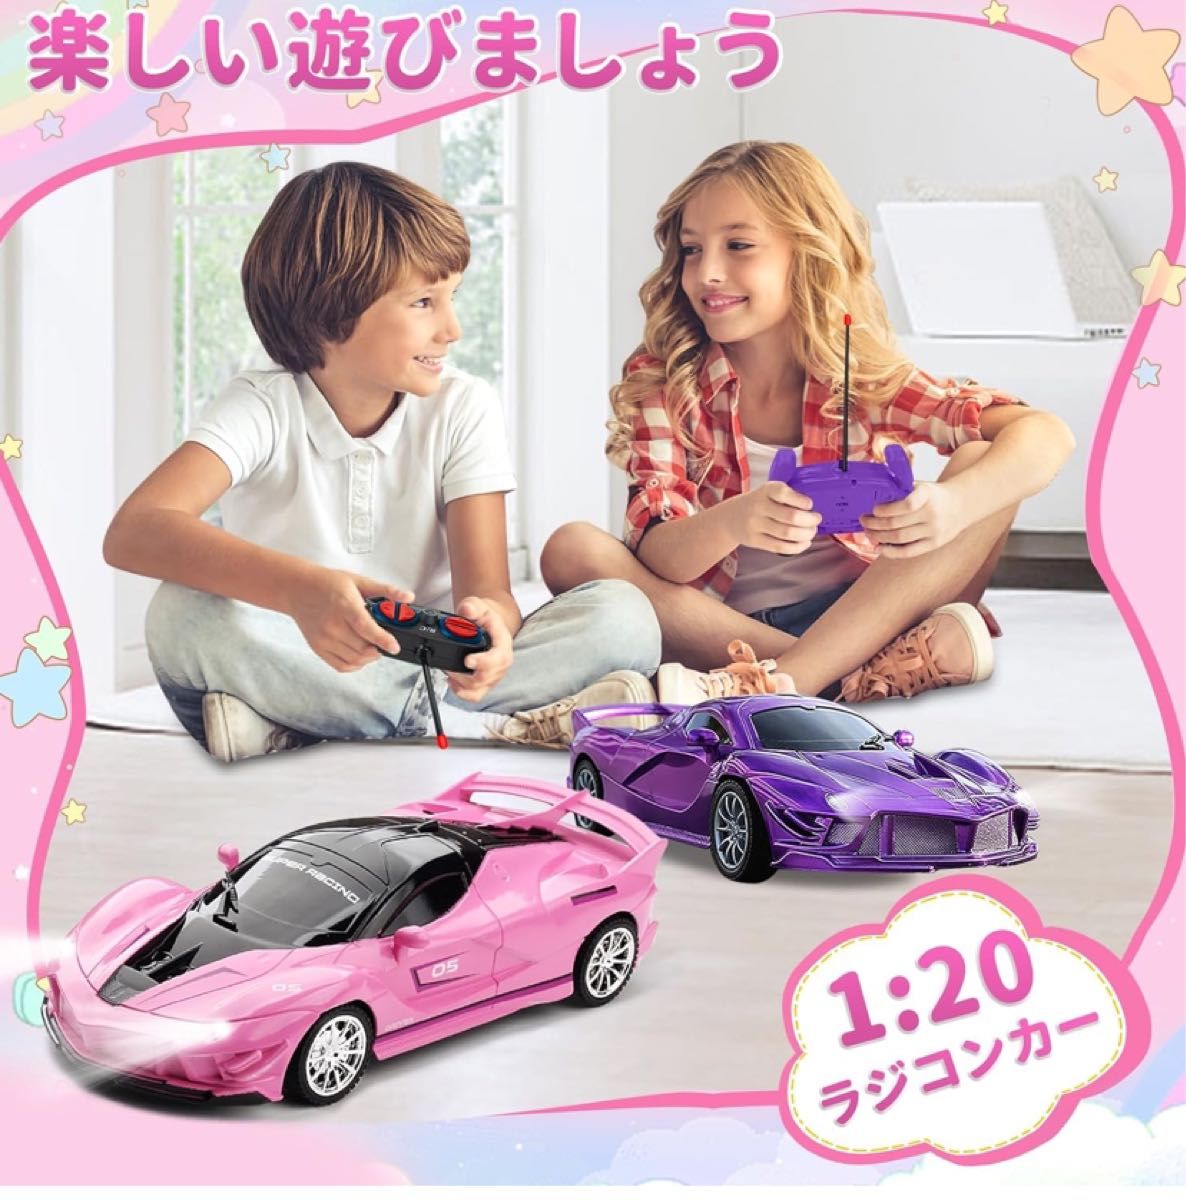 ラジコンカー こども向け 車おもちゃ 電動RCカー 子供おもちゃ初心者向け女の子 男の子贈り物 (ピンク スポーツカー)